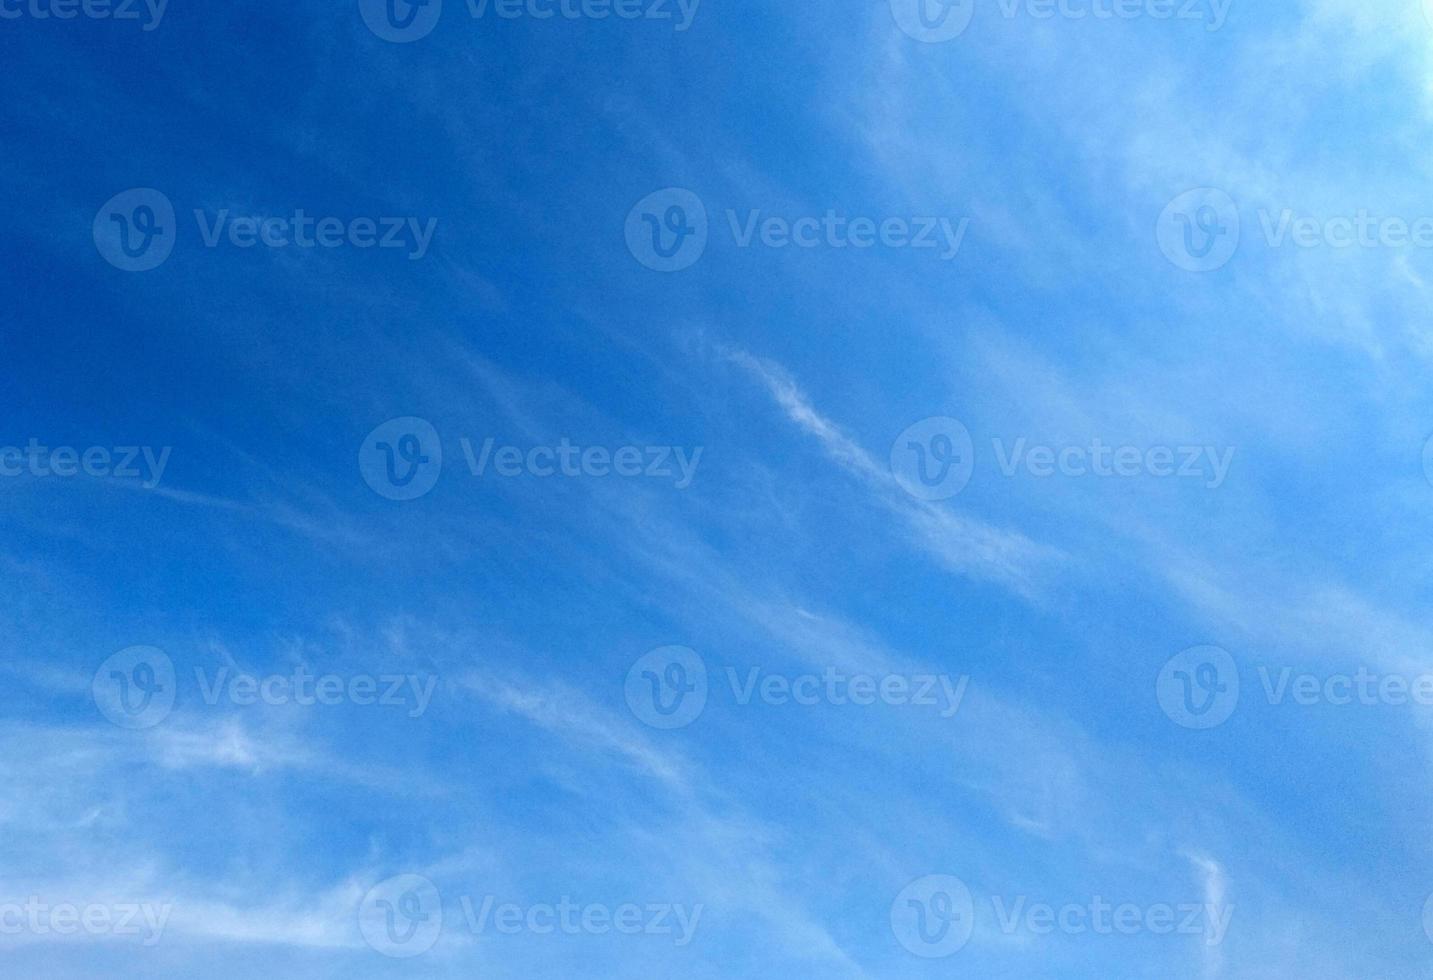 céu azul com fundo de nuvem. textura nublada. foco seletivo. copie o espaço. brincar foto